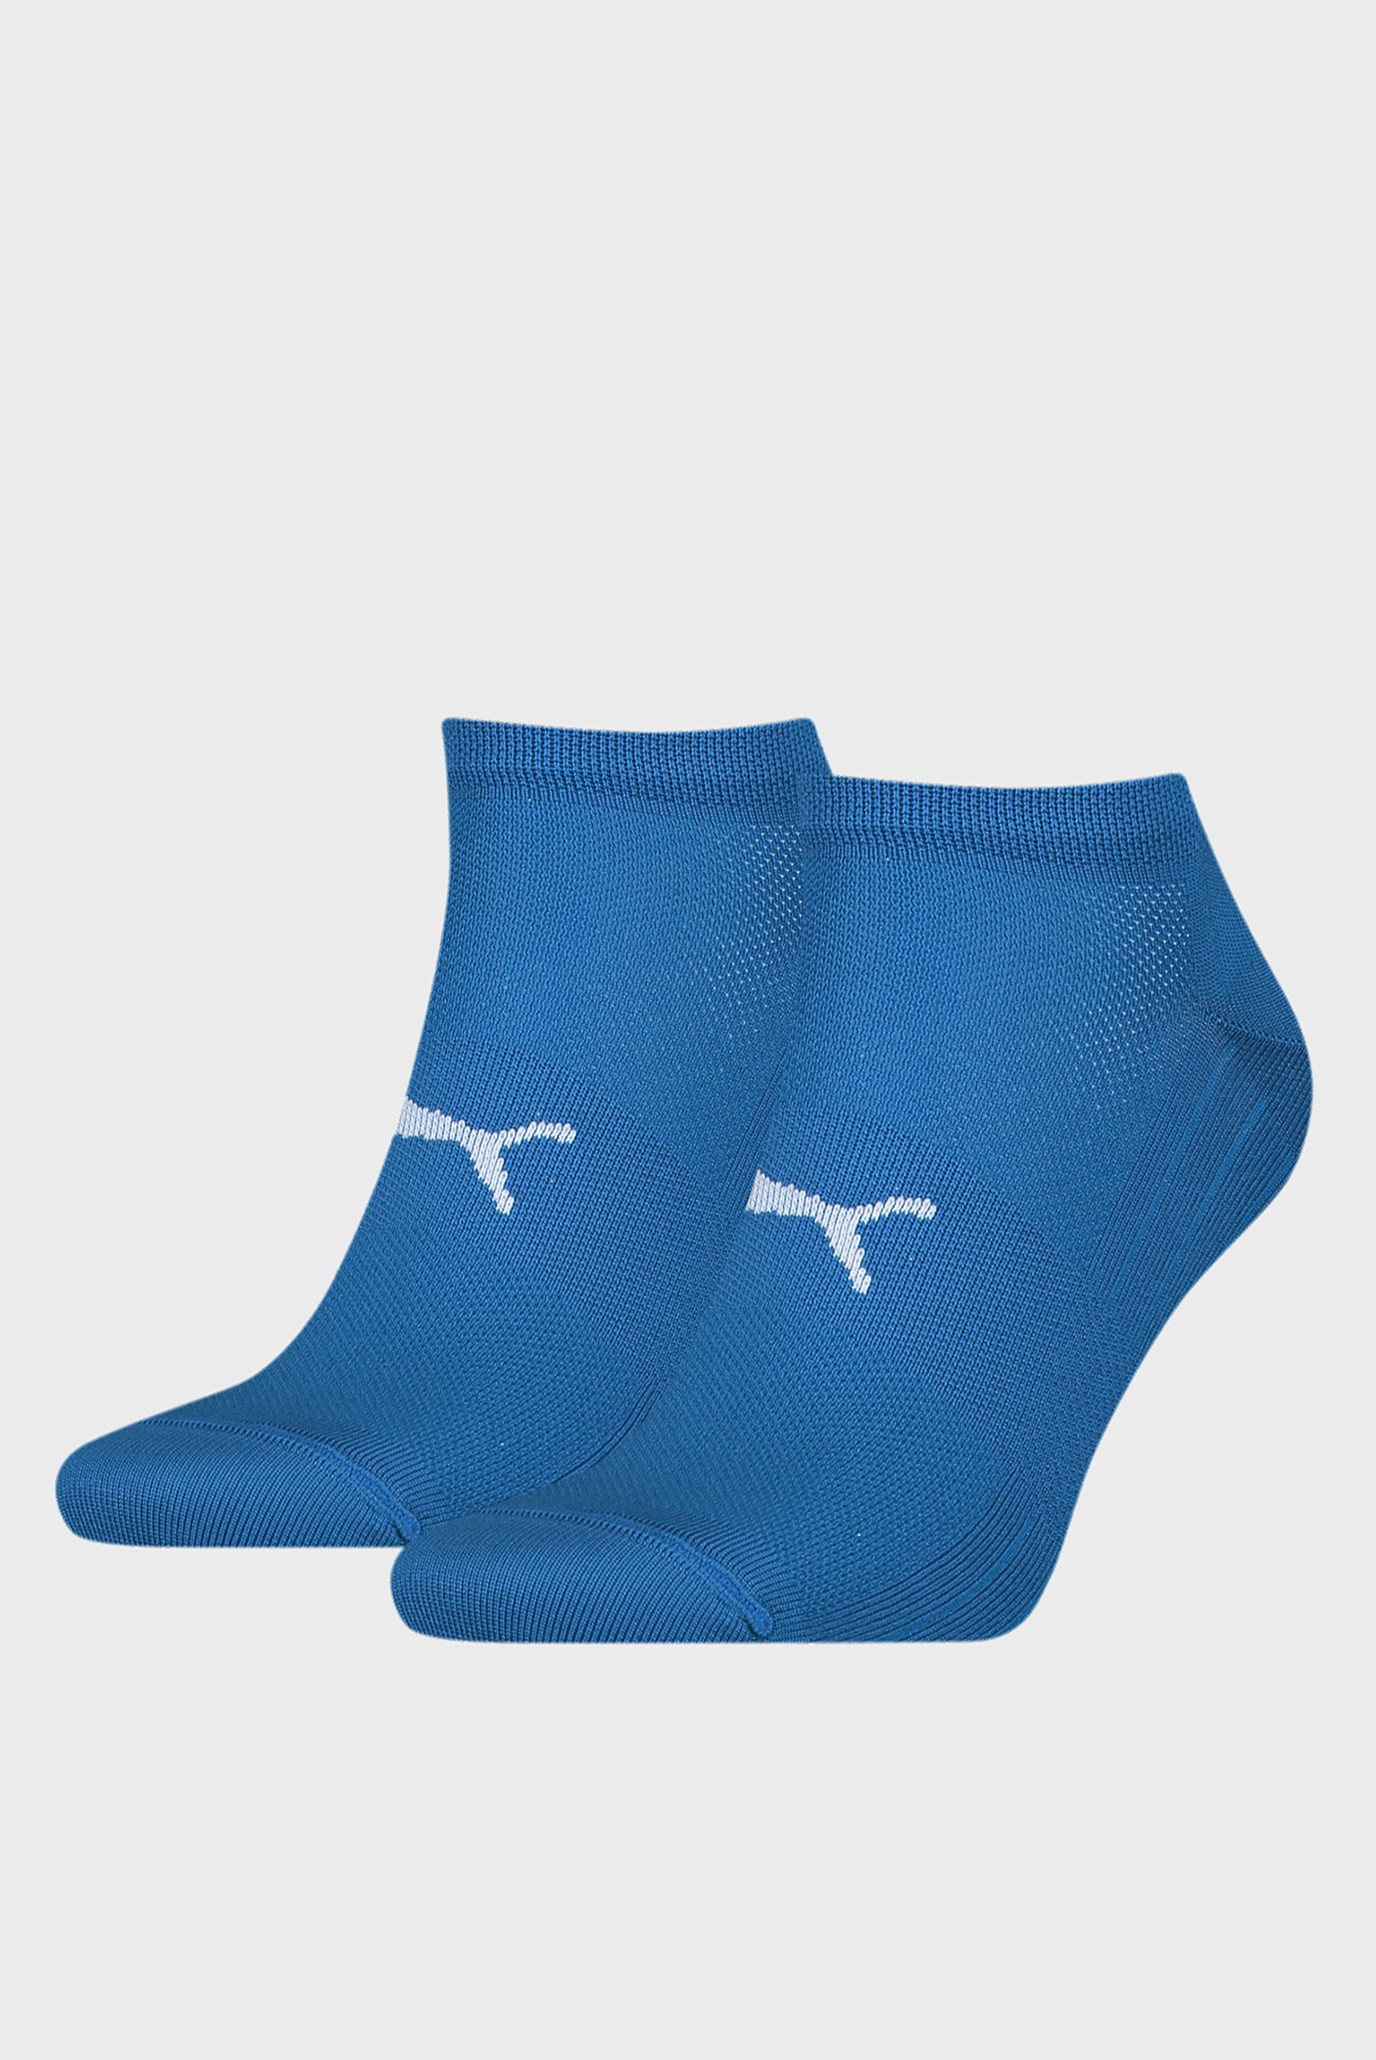 Синие носки (2 пары) PUMA Sport Unisex Light Sneaker Socks 1